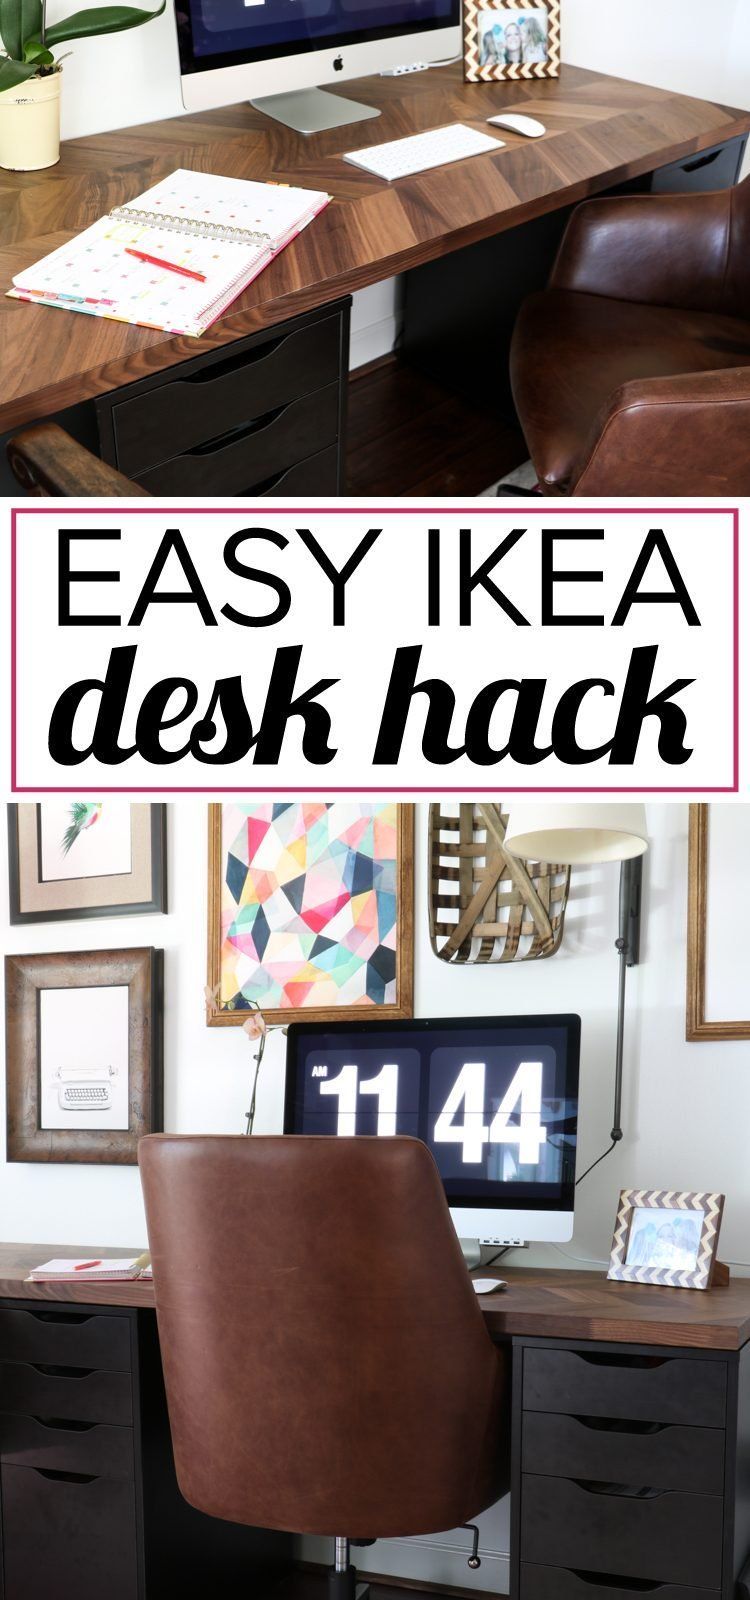 Easy and Gorgeous Ikea Desk Hack | Designer Trapped - Easy and Gorgeous Ikea Desk Hack | Designer Trapped -   18 diy Desk hack ideas